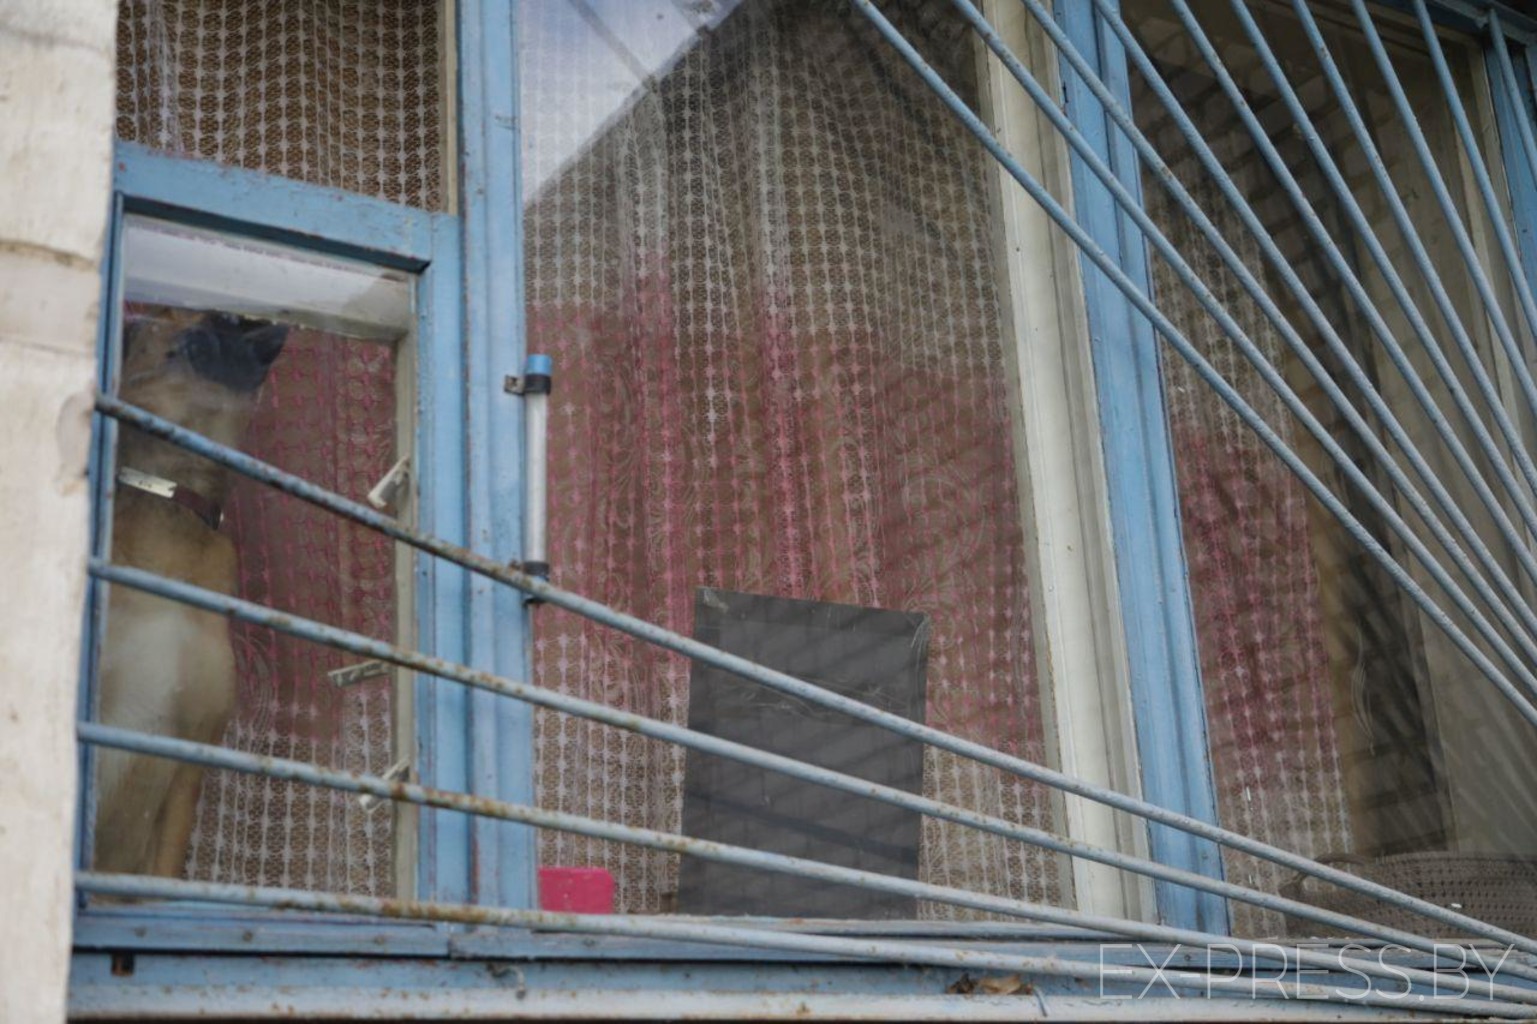 Мать троих детей вывесила БЧБ-флаг в окне общежития: его сняли, а её выселяют